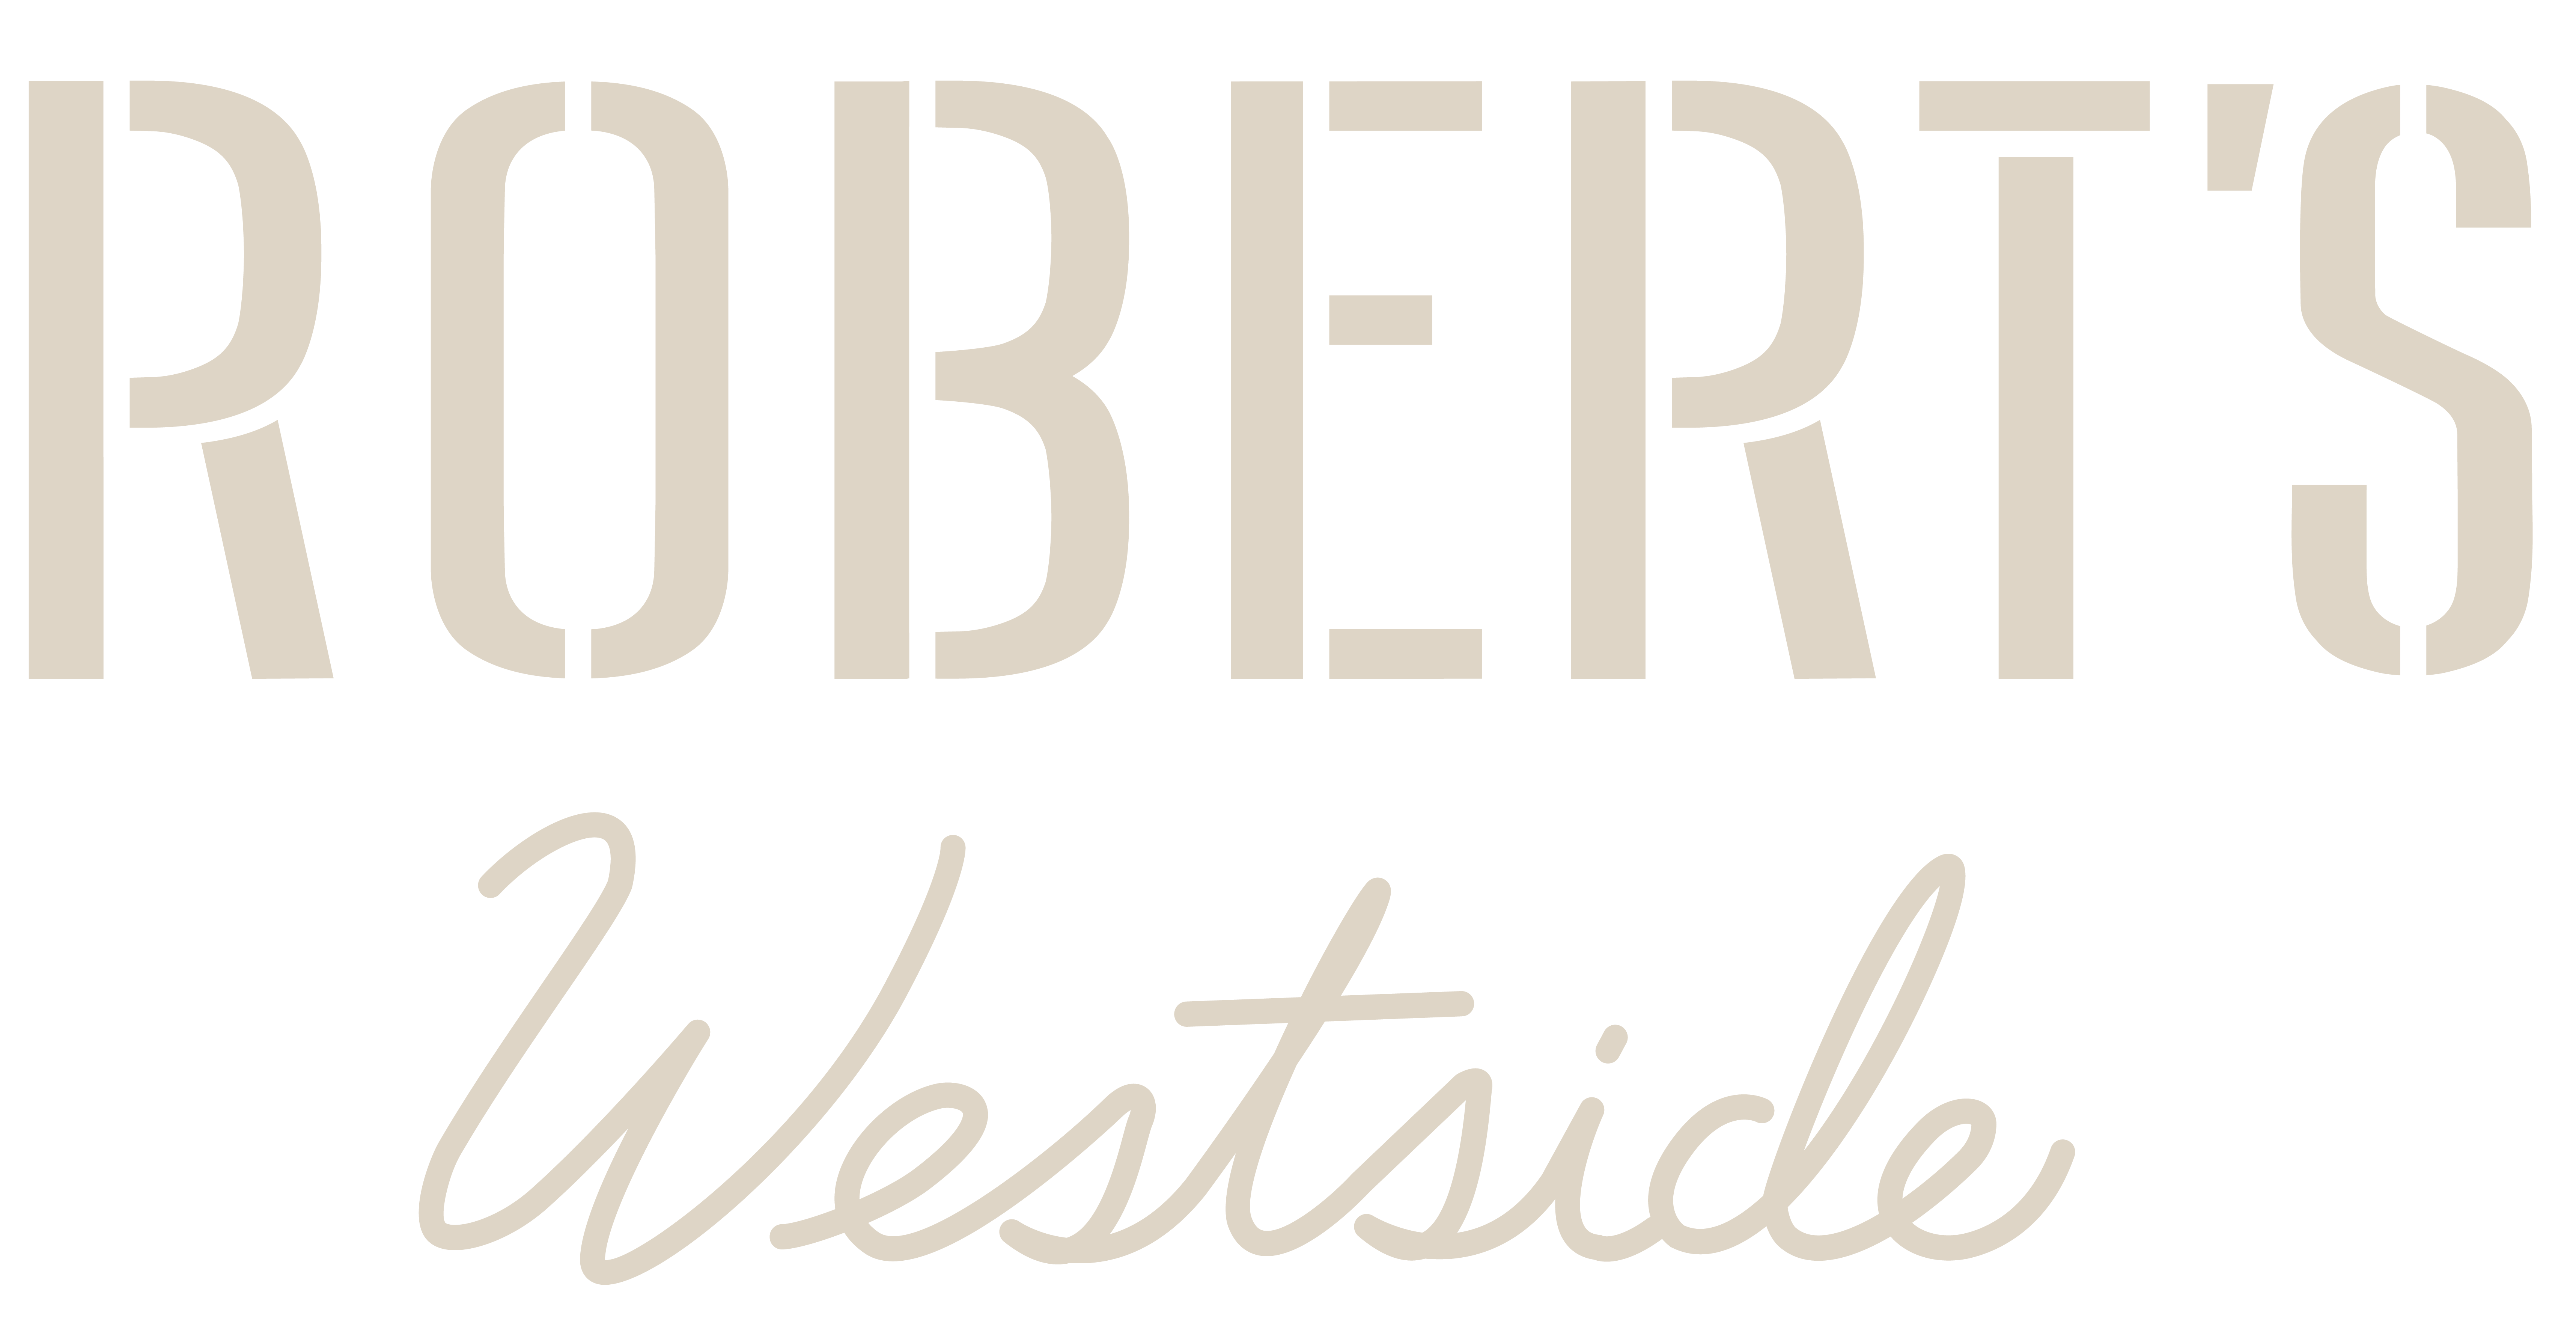 Robert's Westside